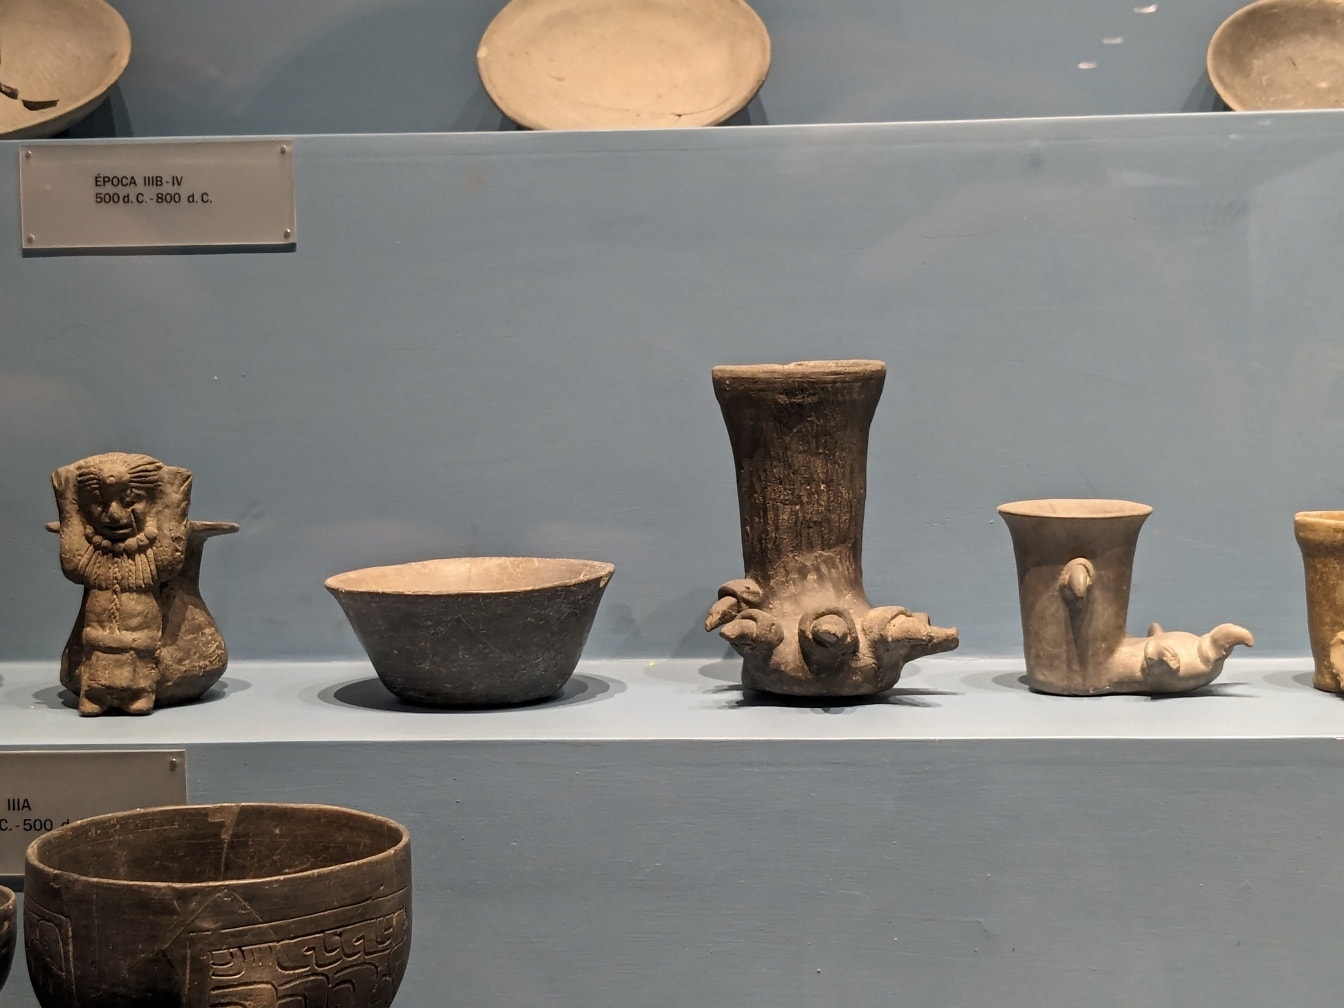 Đồ gốm Mexico cổ đại trên kệ trong bảo tàng khảo cổ học ở Oxaca